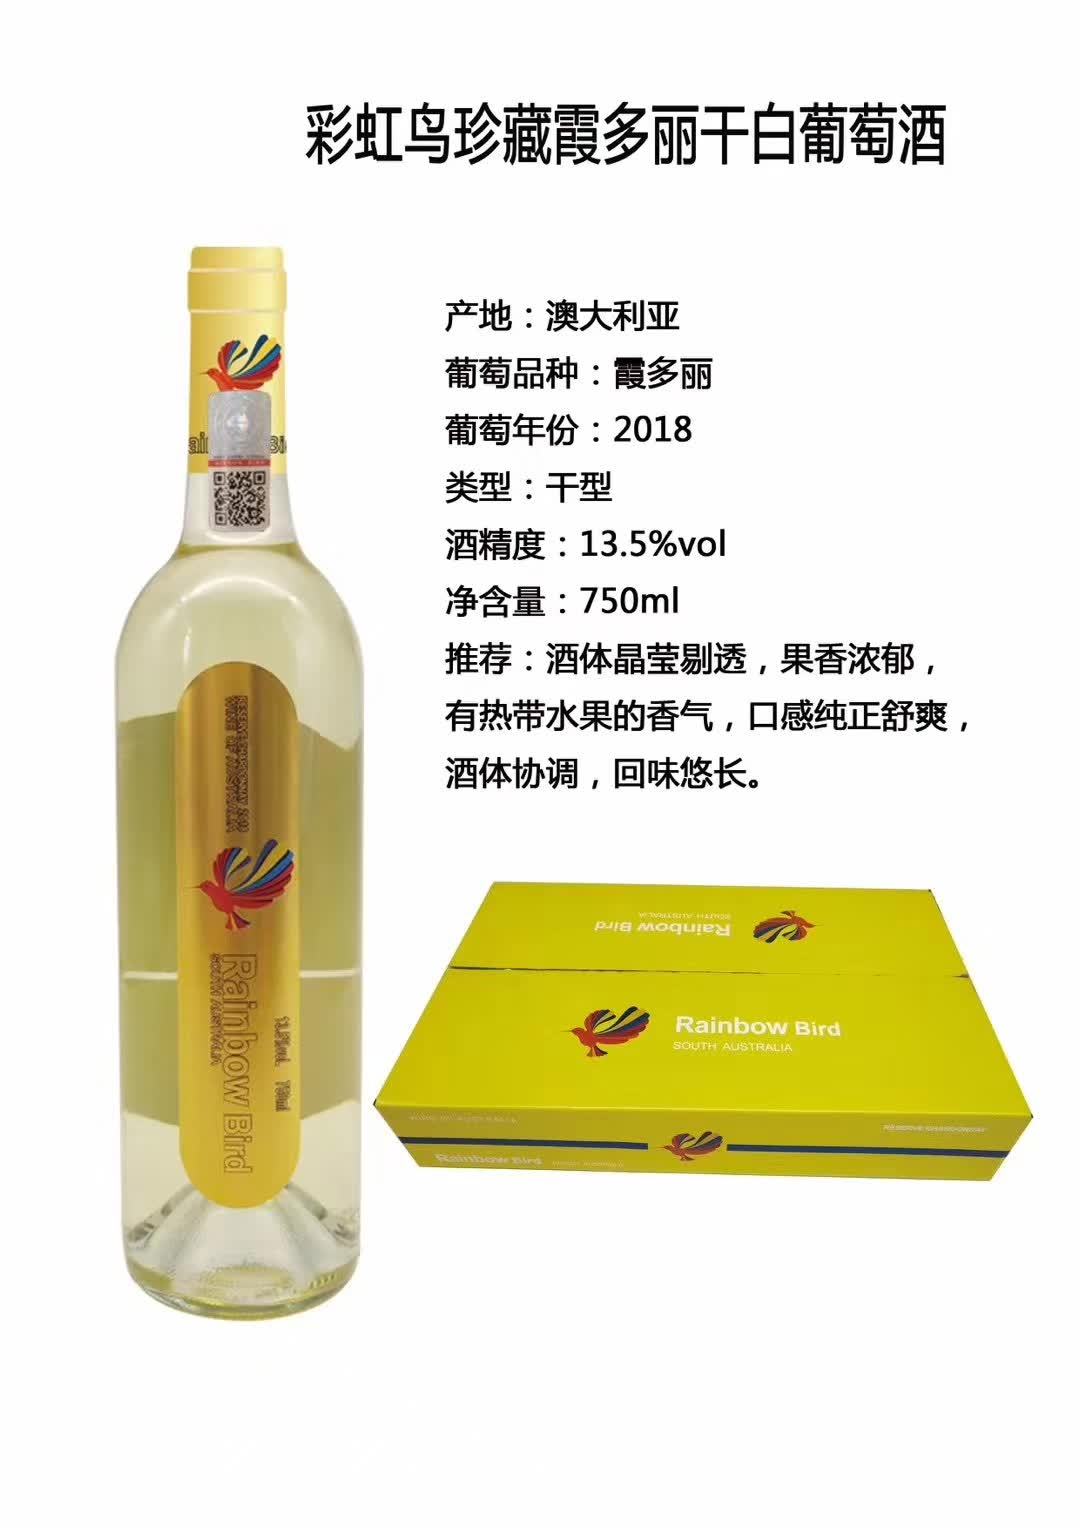 上海万耀南澳大利亚原装进口彩虹鸟珍藏干白葡萄酒加盟代理